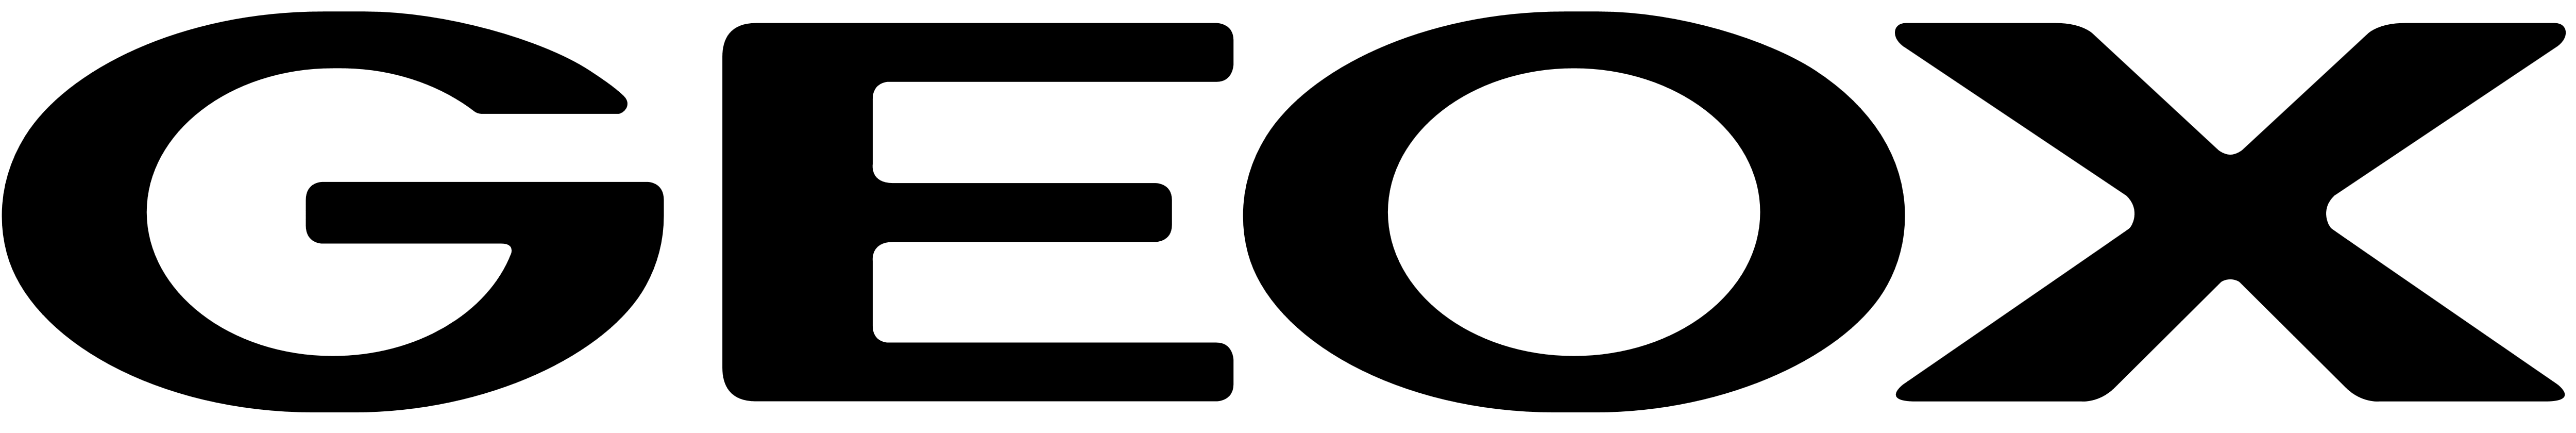 Логотип Geox